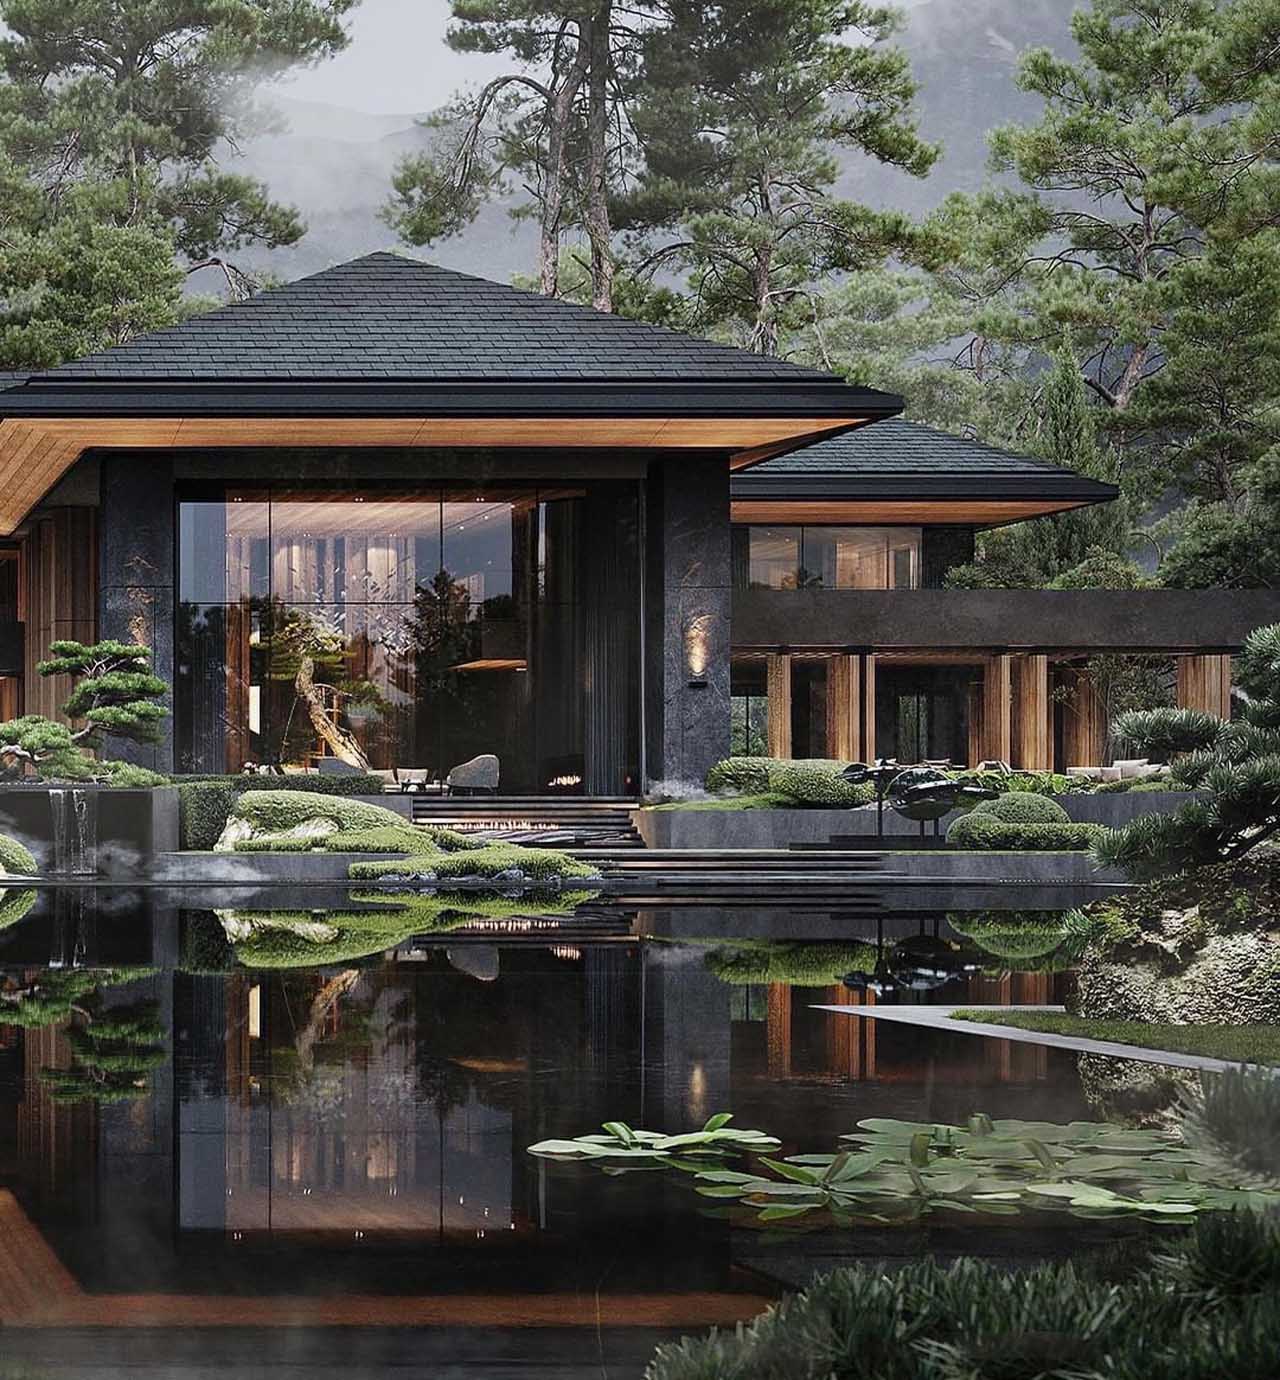 Biệt thự nhà vườn kiểu Nhật được thiết kế phong cách nghỉ dưỡng tiện nghi hiện đại